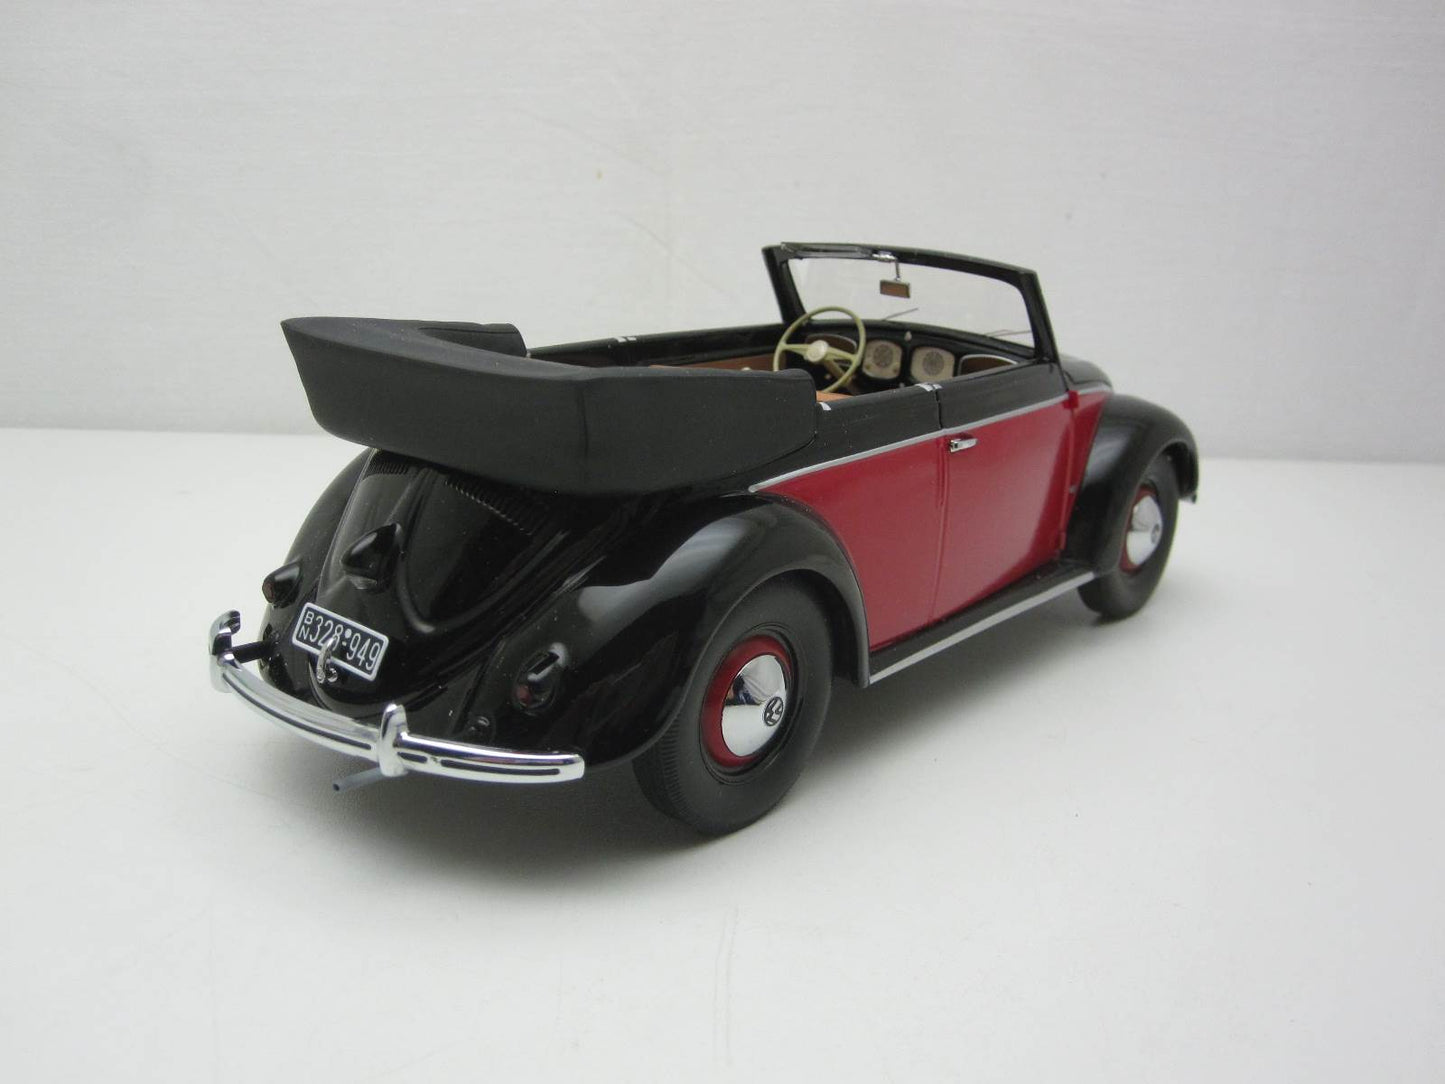 Minichamps 1:18 Volkswagen Beetle 1200 Cabriolet 1949 Black/Red 107054132